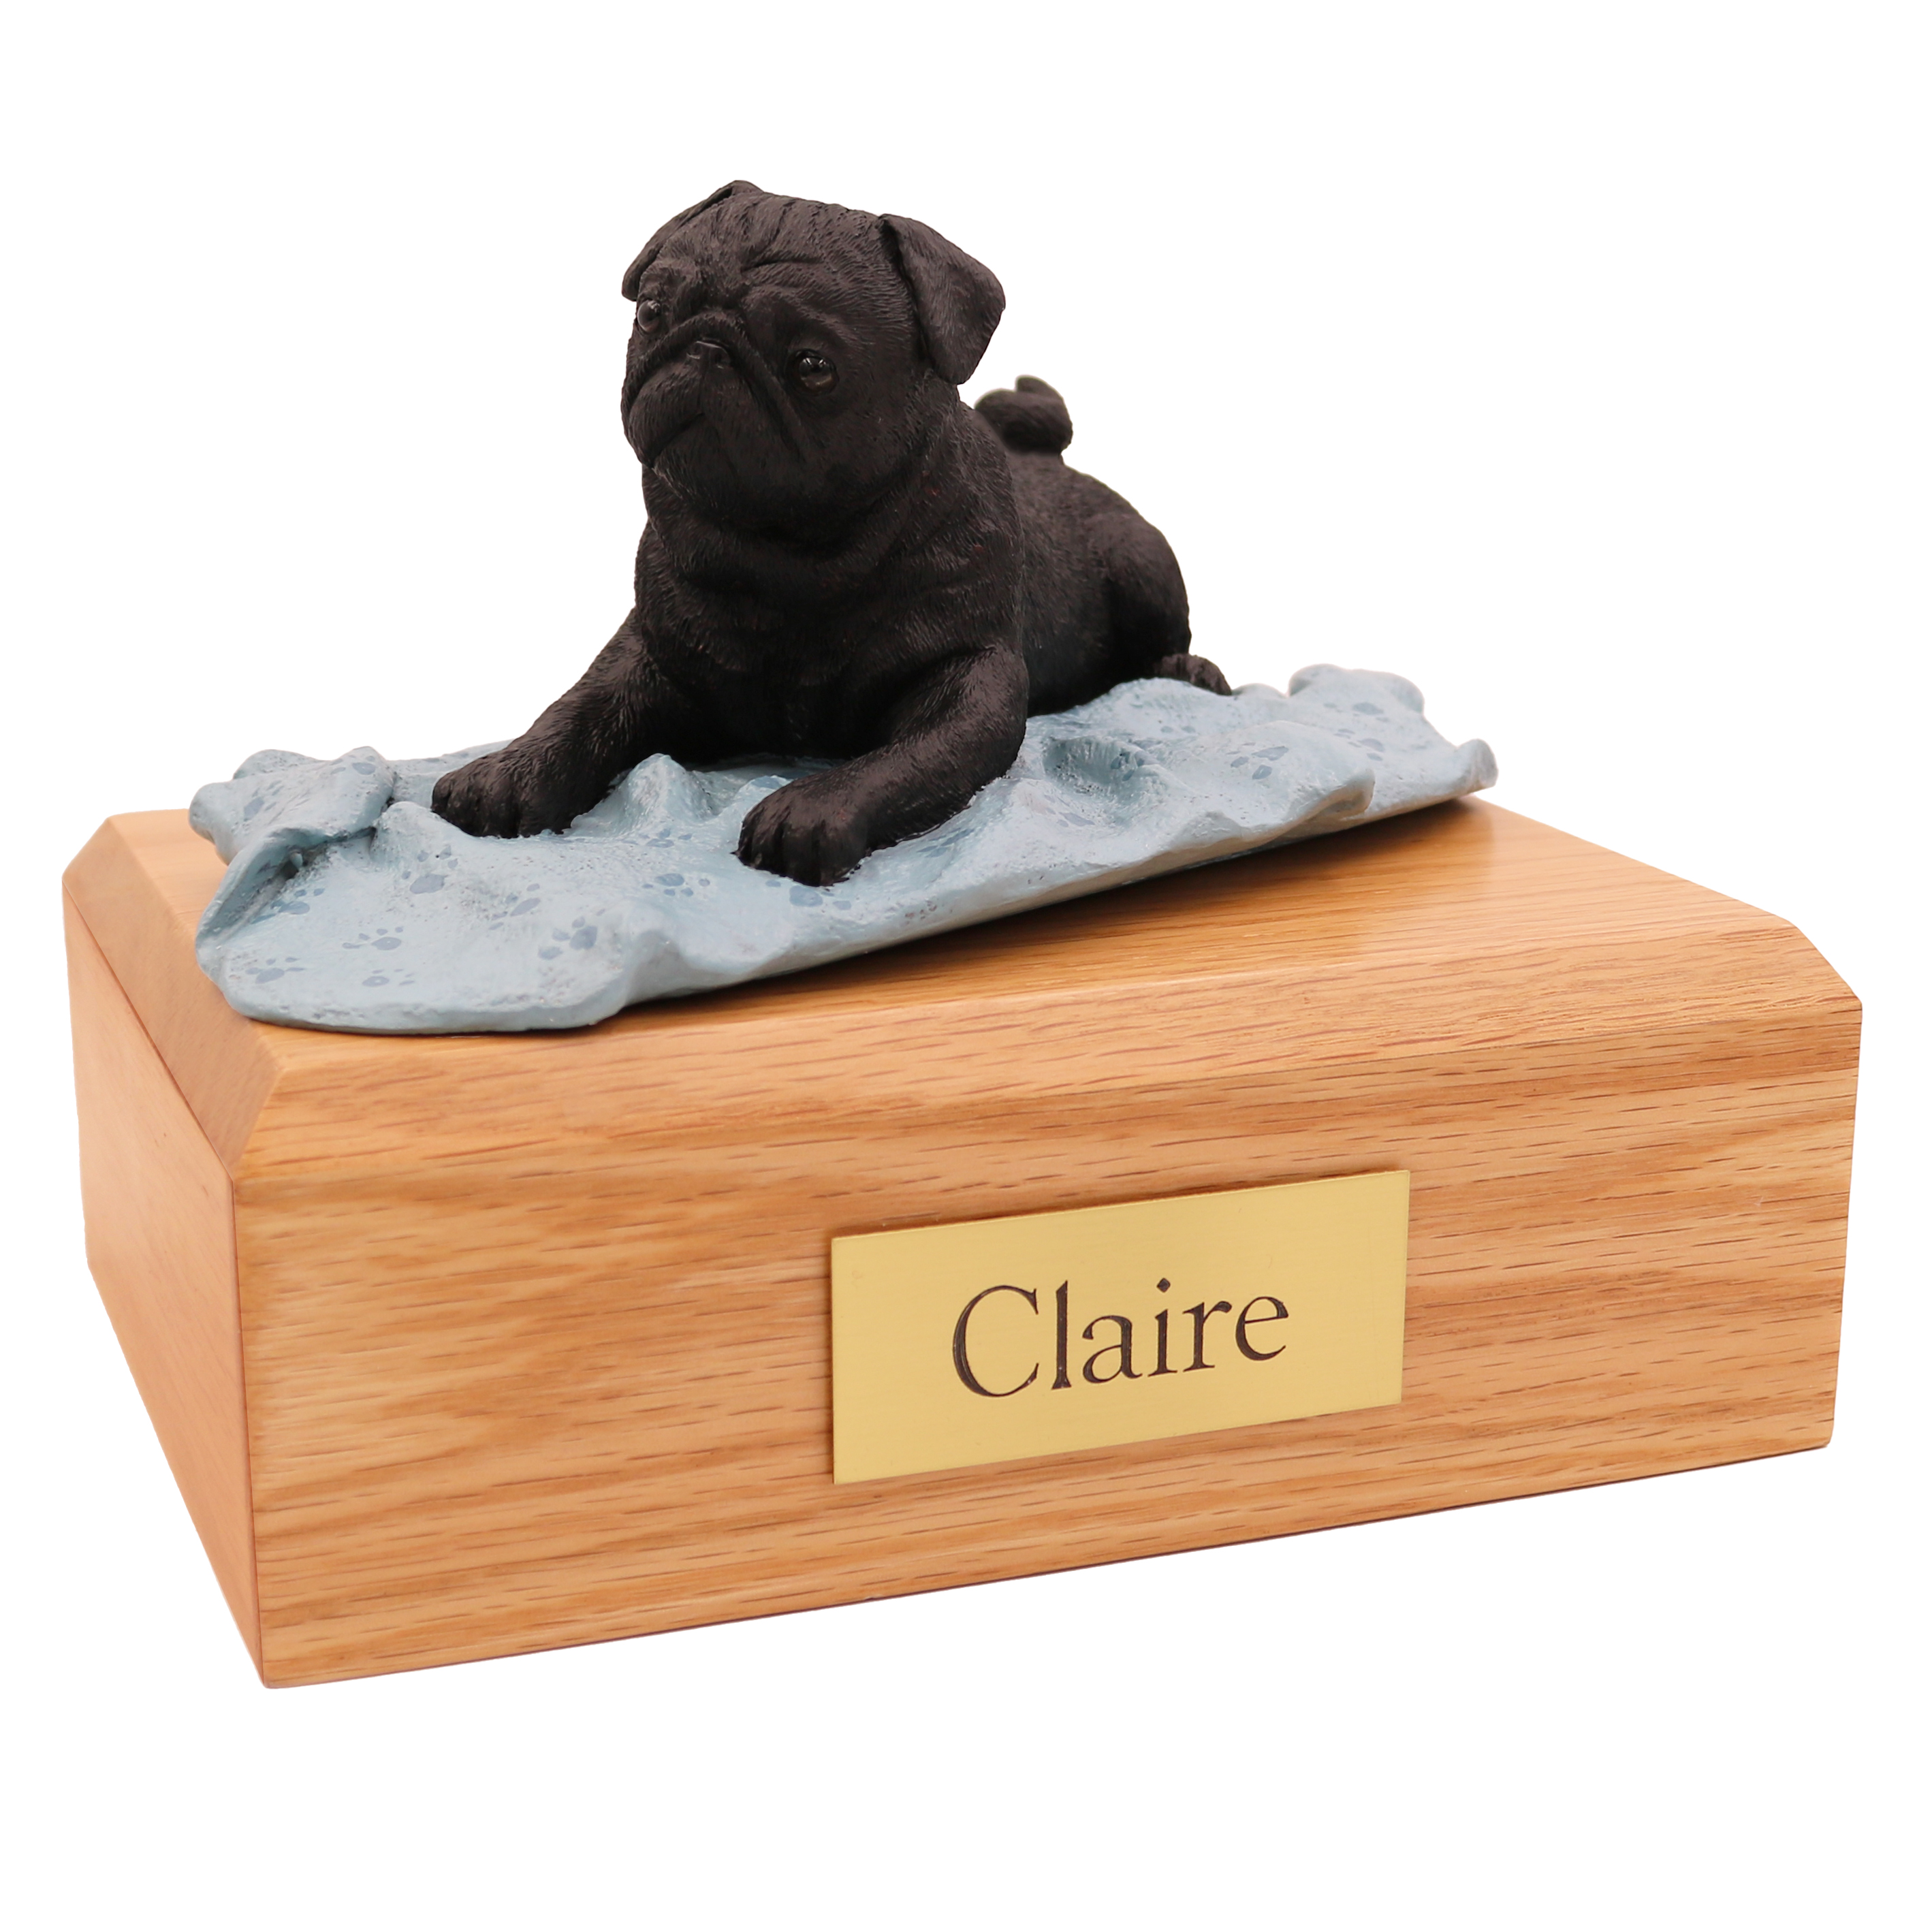 Dog, Pug, Black - Figurine Urn